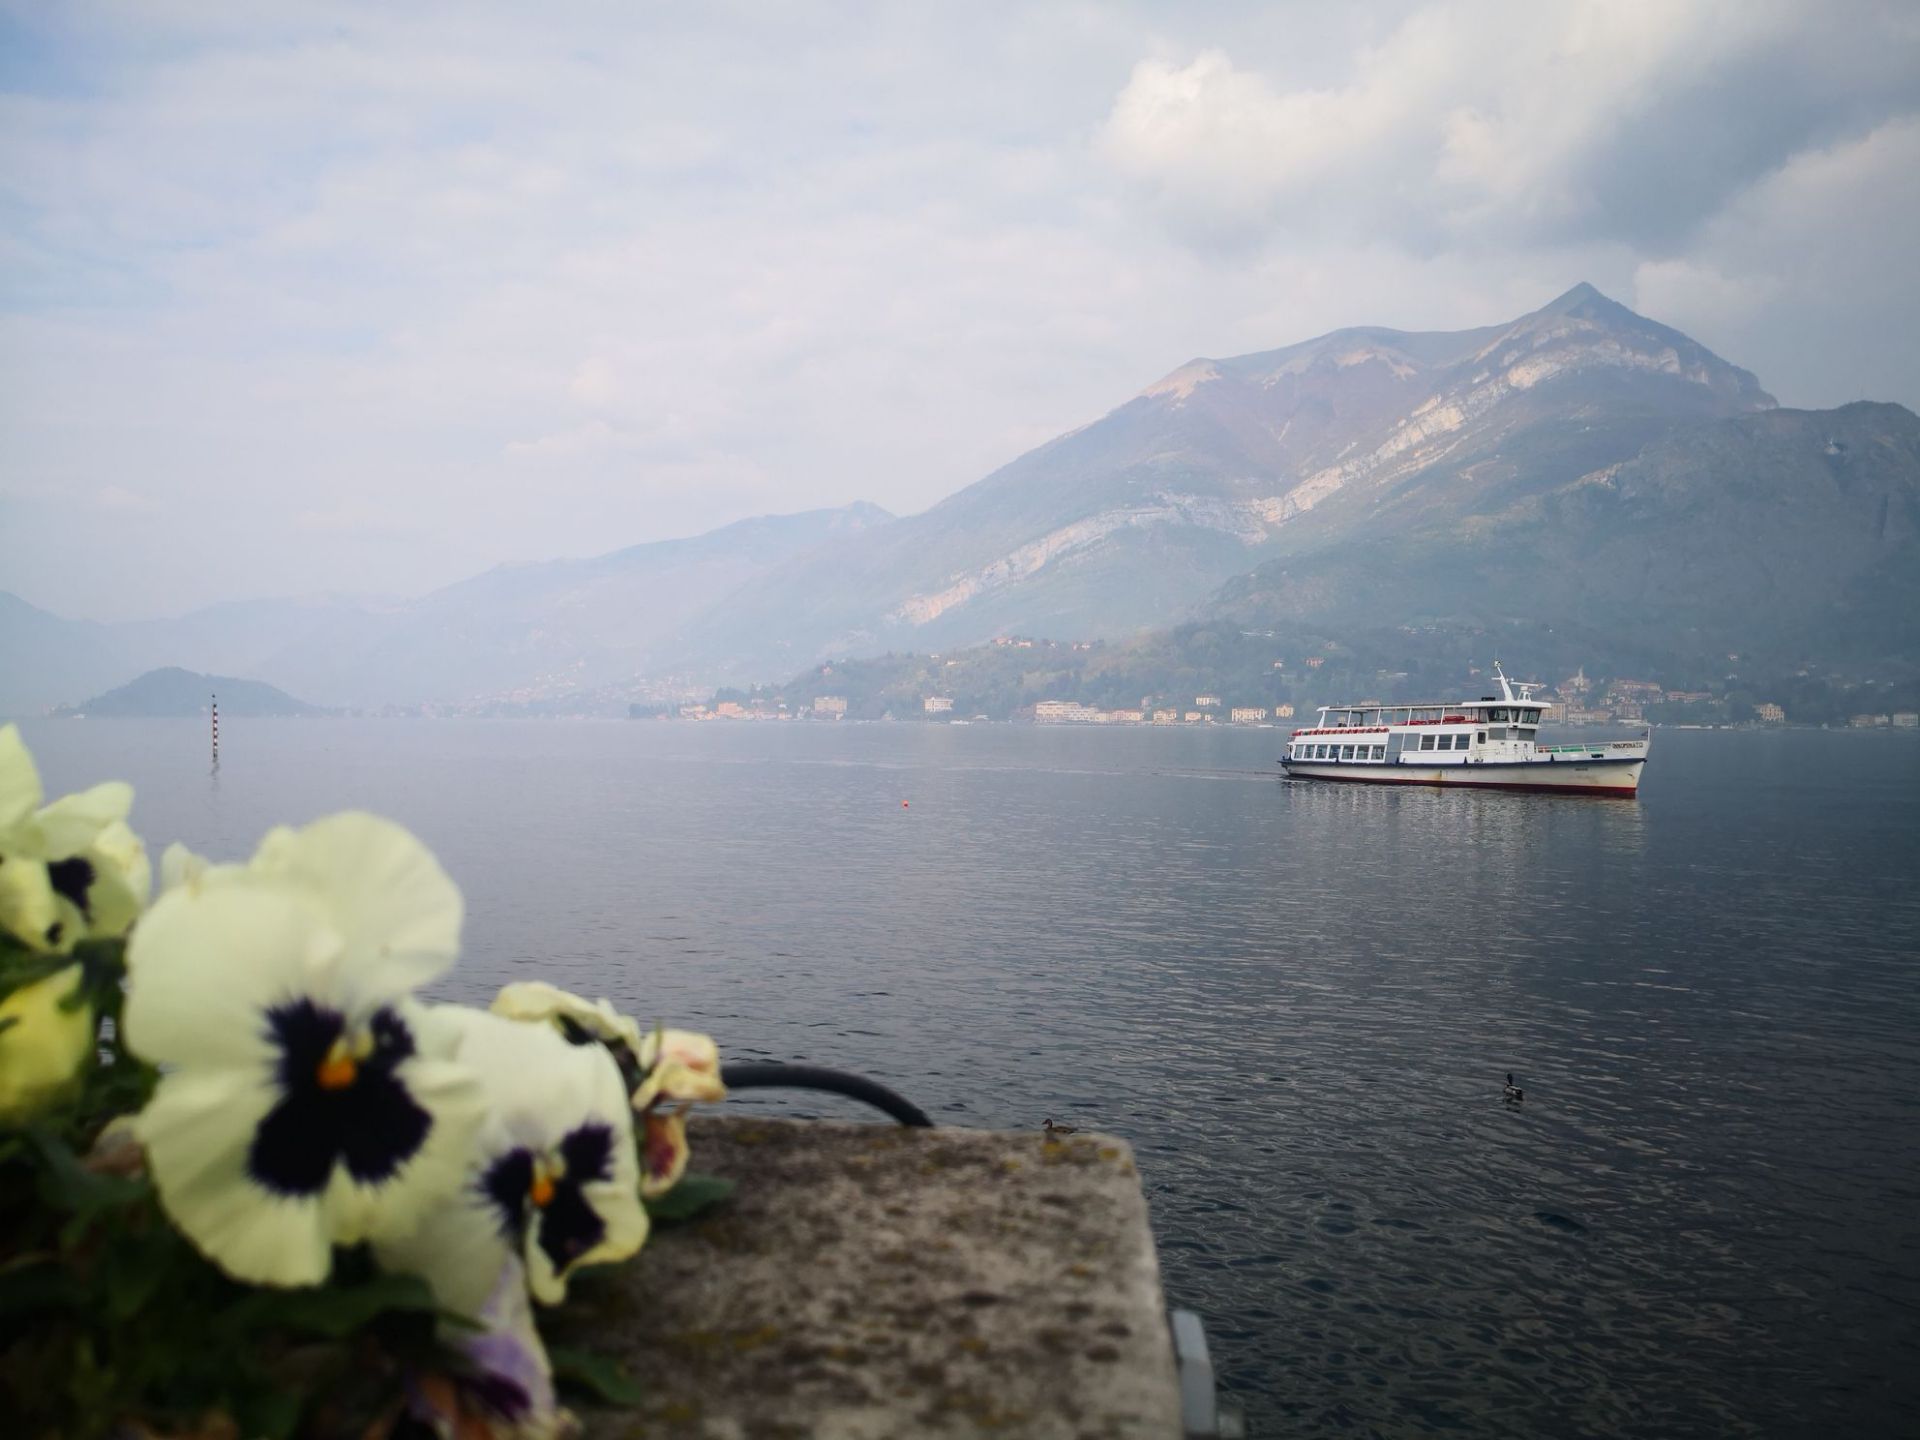 贝拉吉奥是意大利科莫湖“Y”的交叉点处的一个小镇，是享誉欧洲的度假胜地之一，被称为科莫湖的明珠。其历